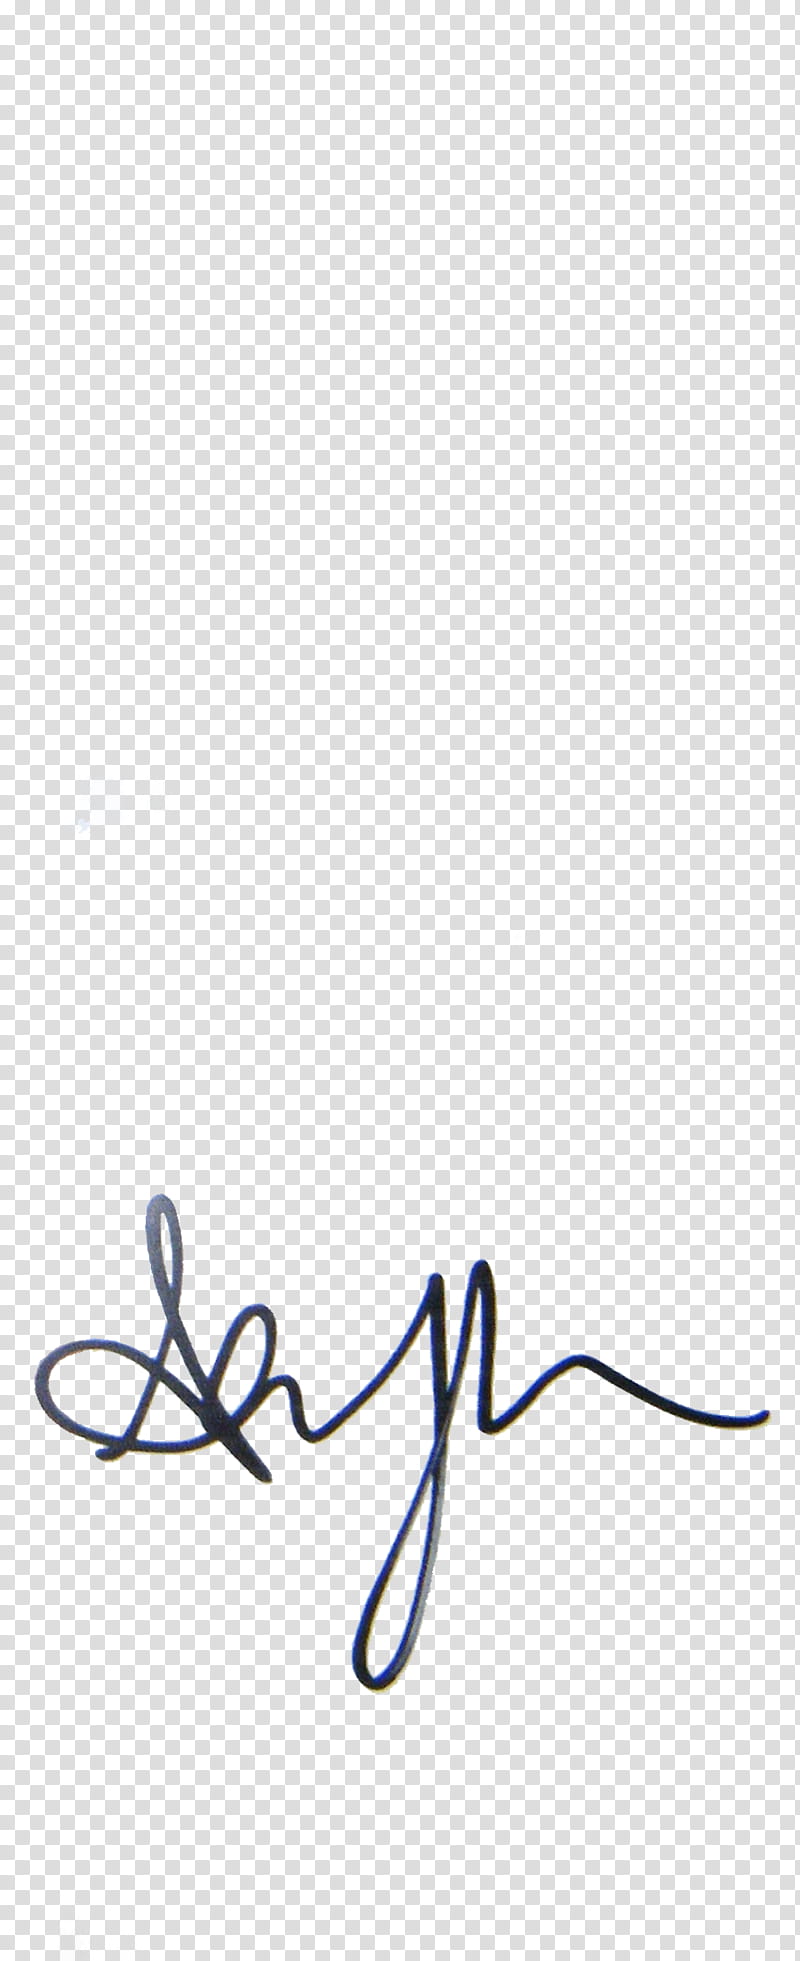 Signature S, ashley T autograph transparent background PNG clipart